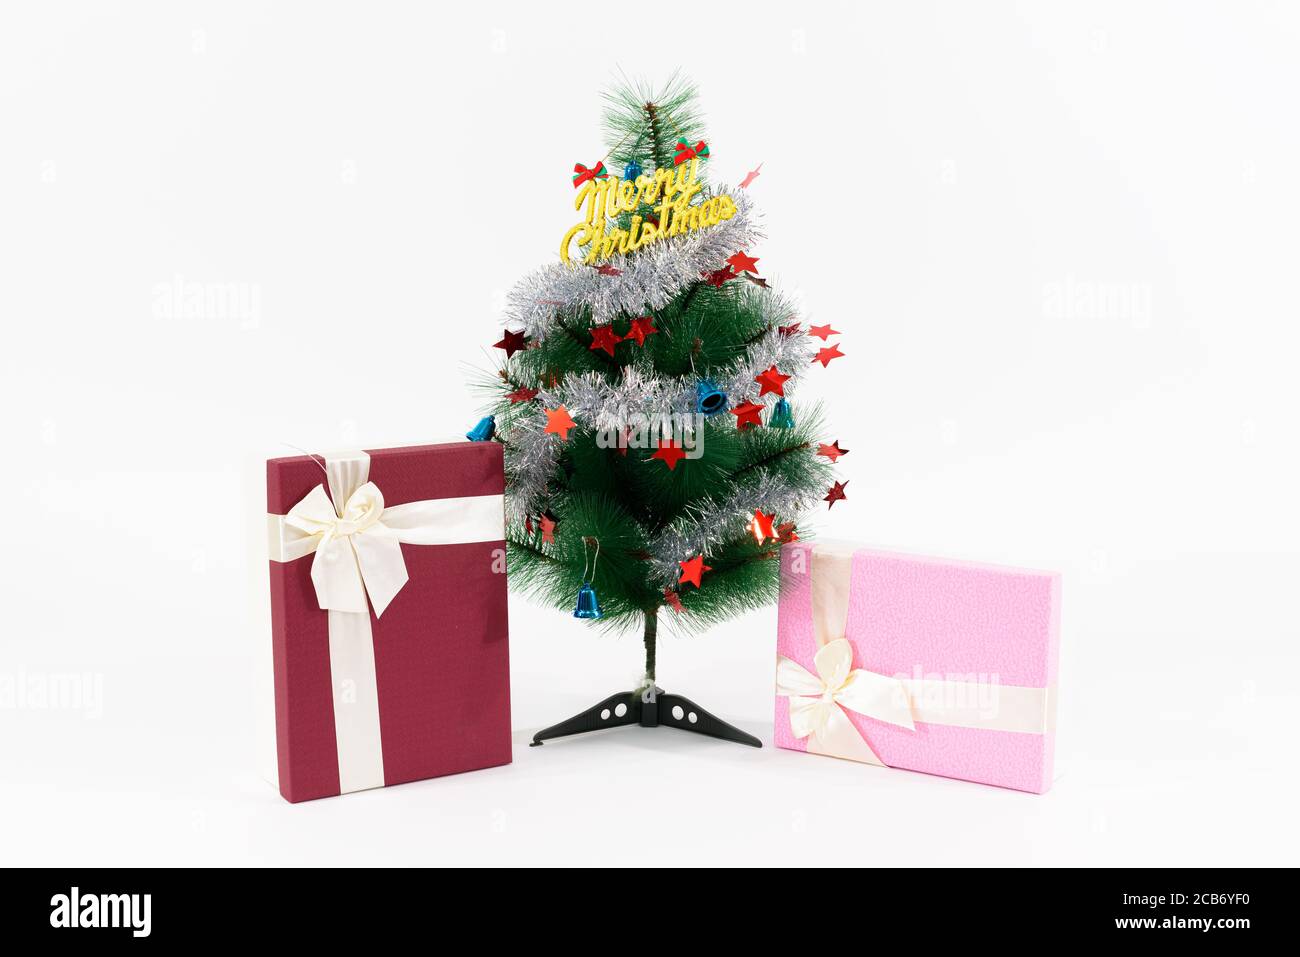 Weihnachtsgeschenke unter geschmückter Weihnachtsbaum mit Frohe Weihnachten Text vor weißem Hintergrund Stockfoto